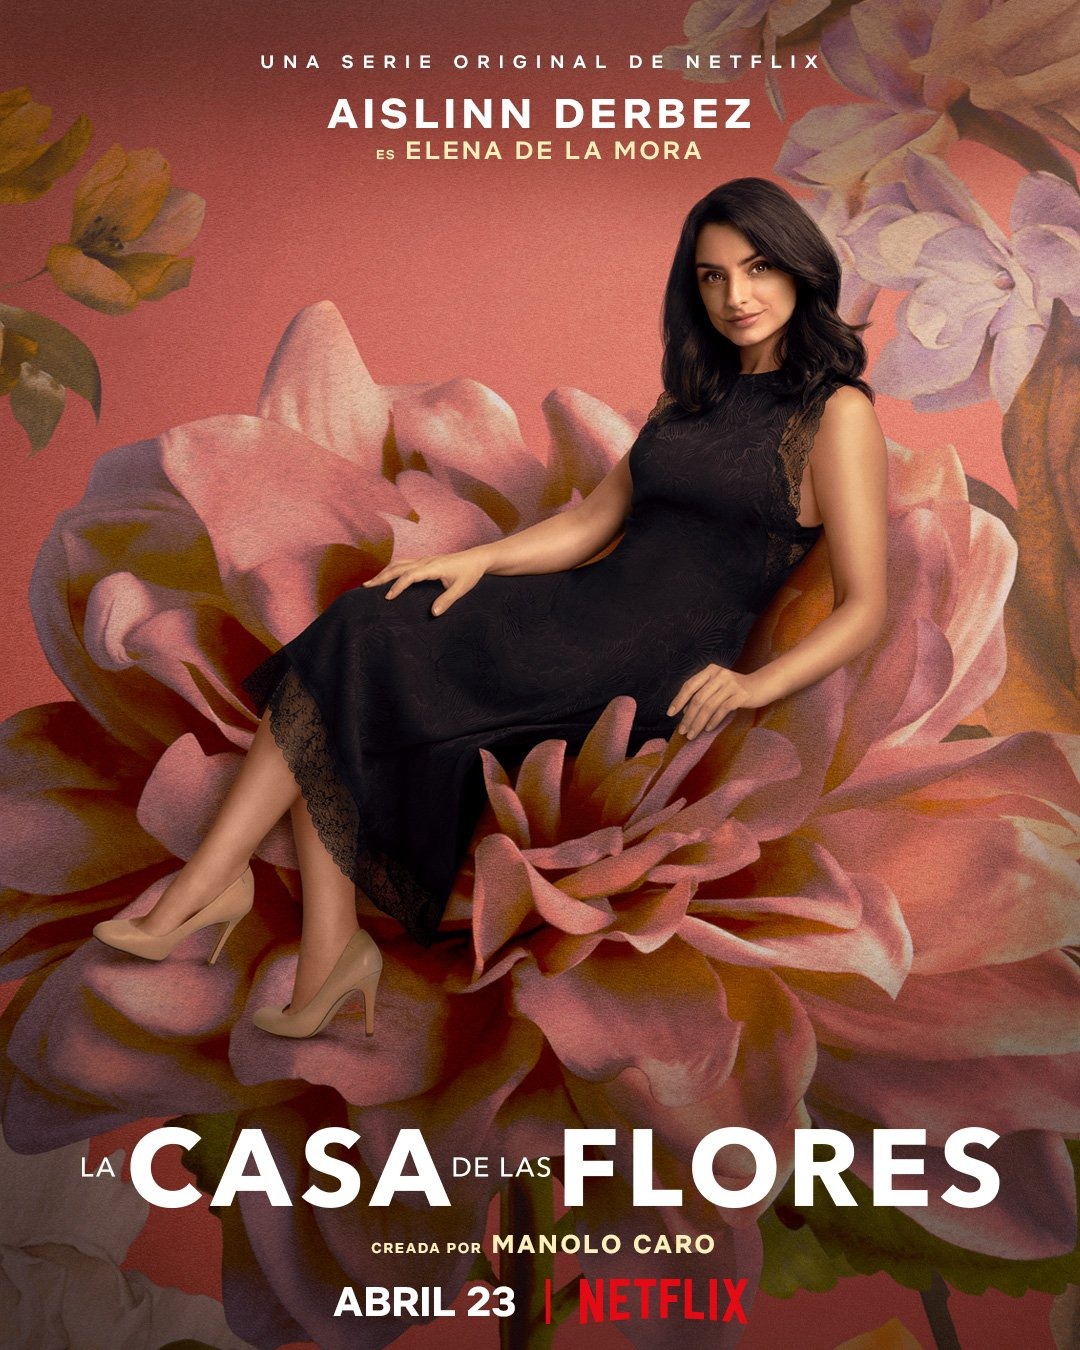 Extra Large TV Poster Image for La casa de las flores (#15 of 19)